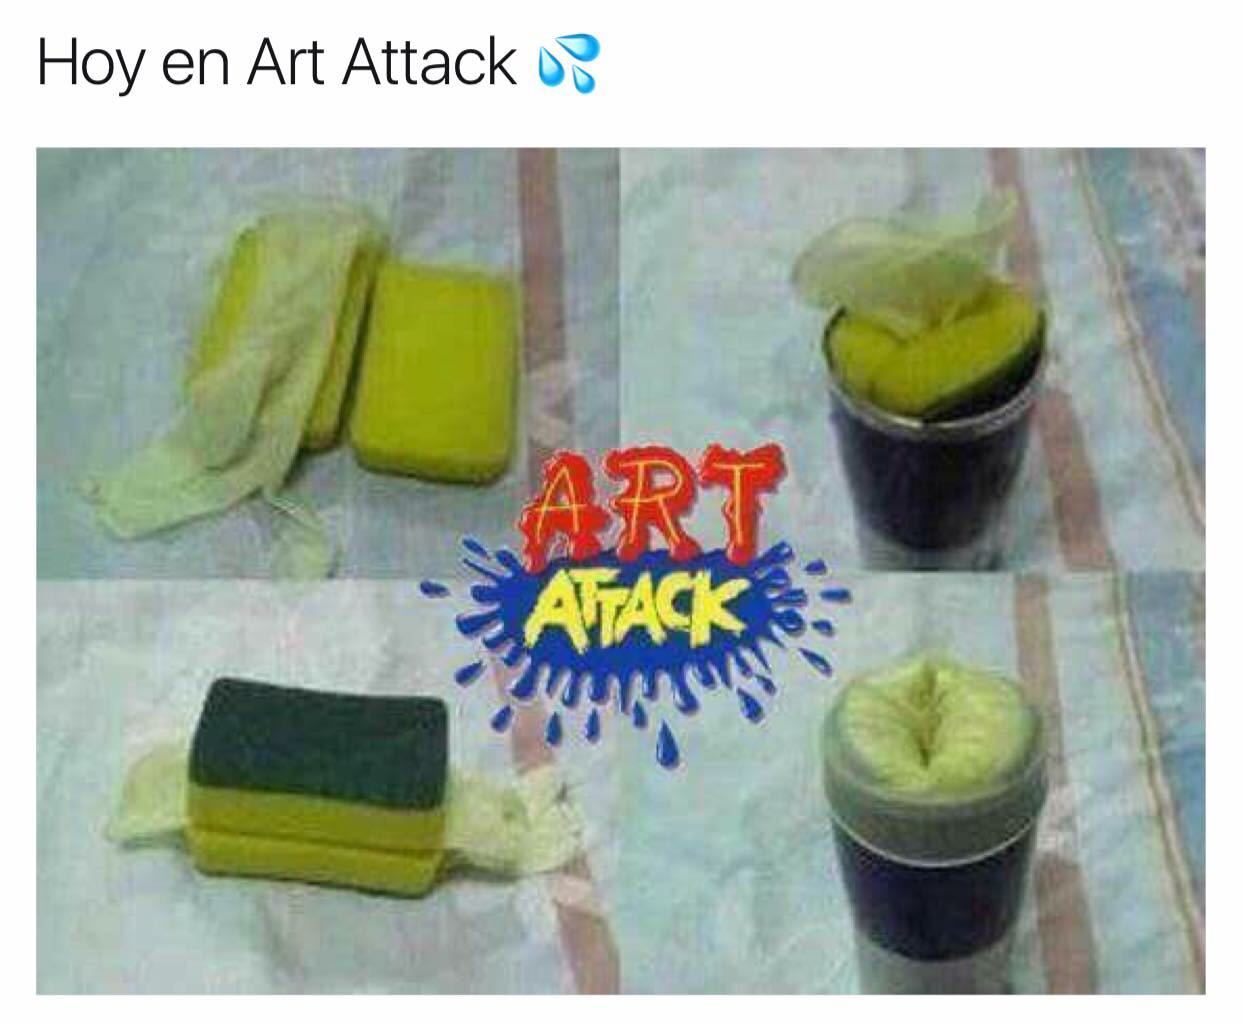 Todos recordamos art attack jajaja - meme